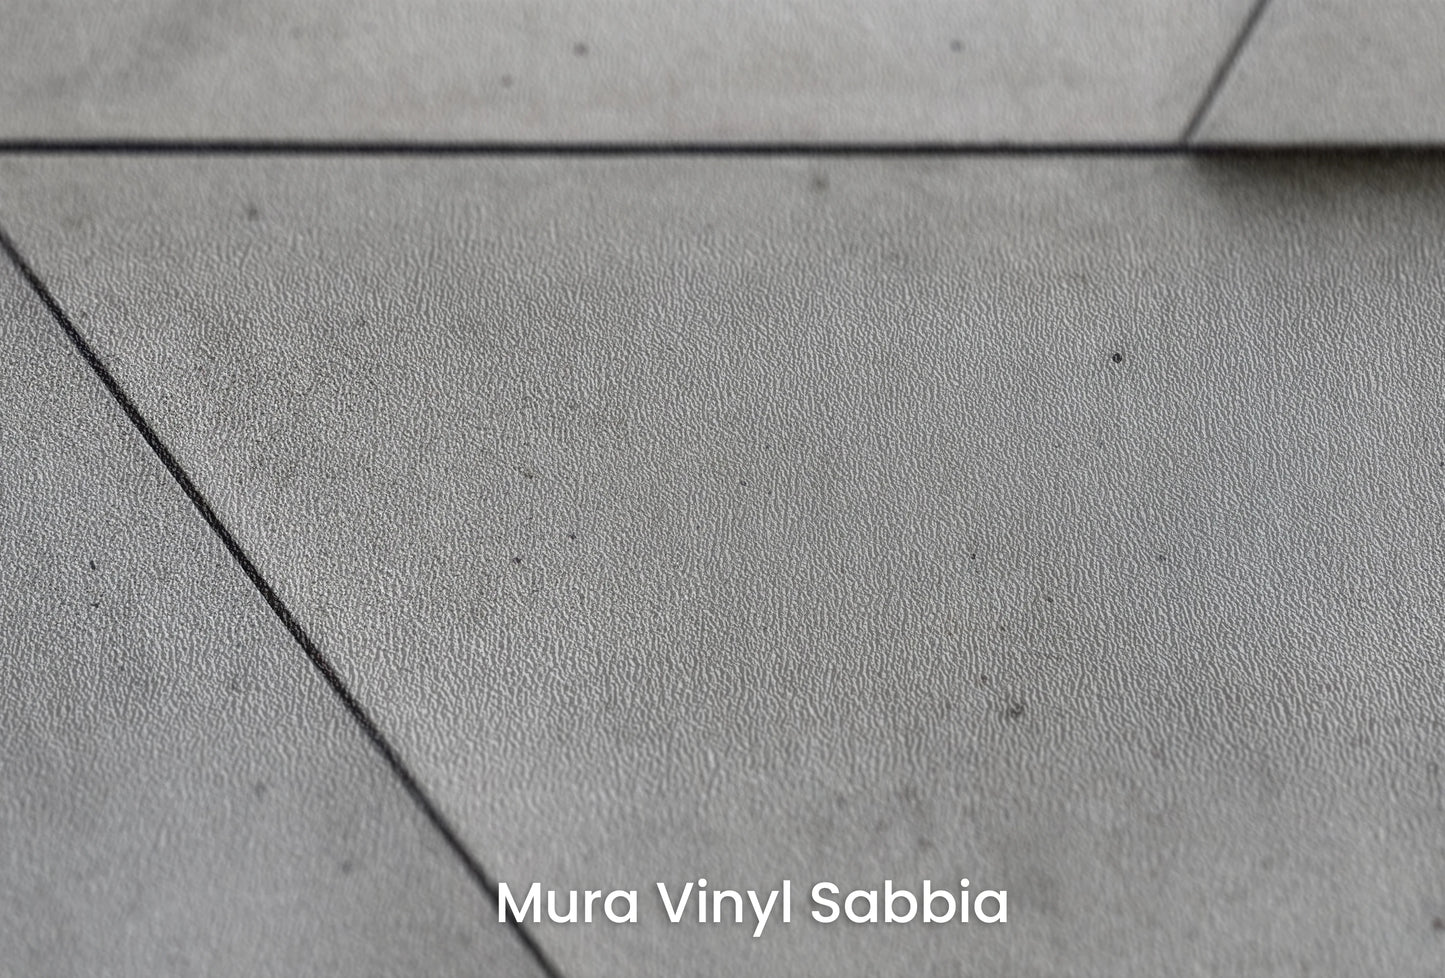 Zbliżenie na artystyczną fototapetę o nazwie Angular Mosaic na podłożu Mura Vinyl Sabbia struktura grubego ziarna piasku.